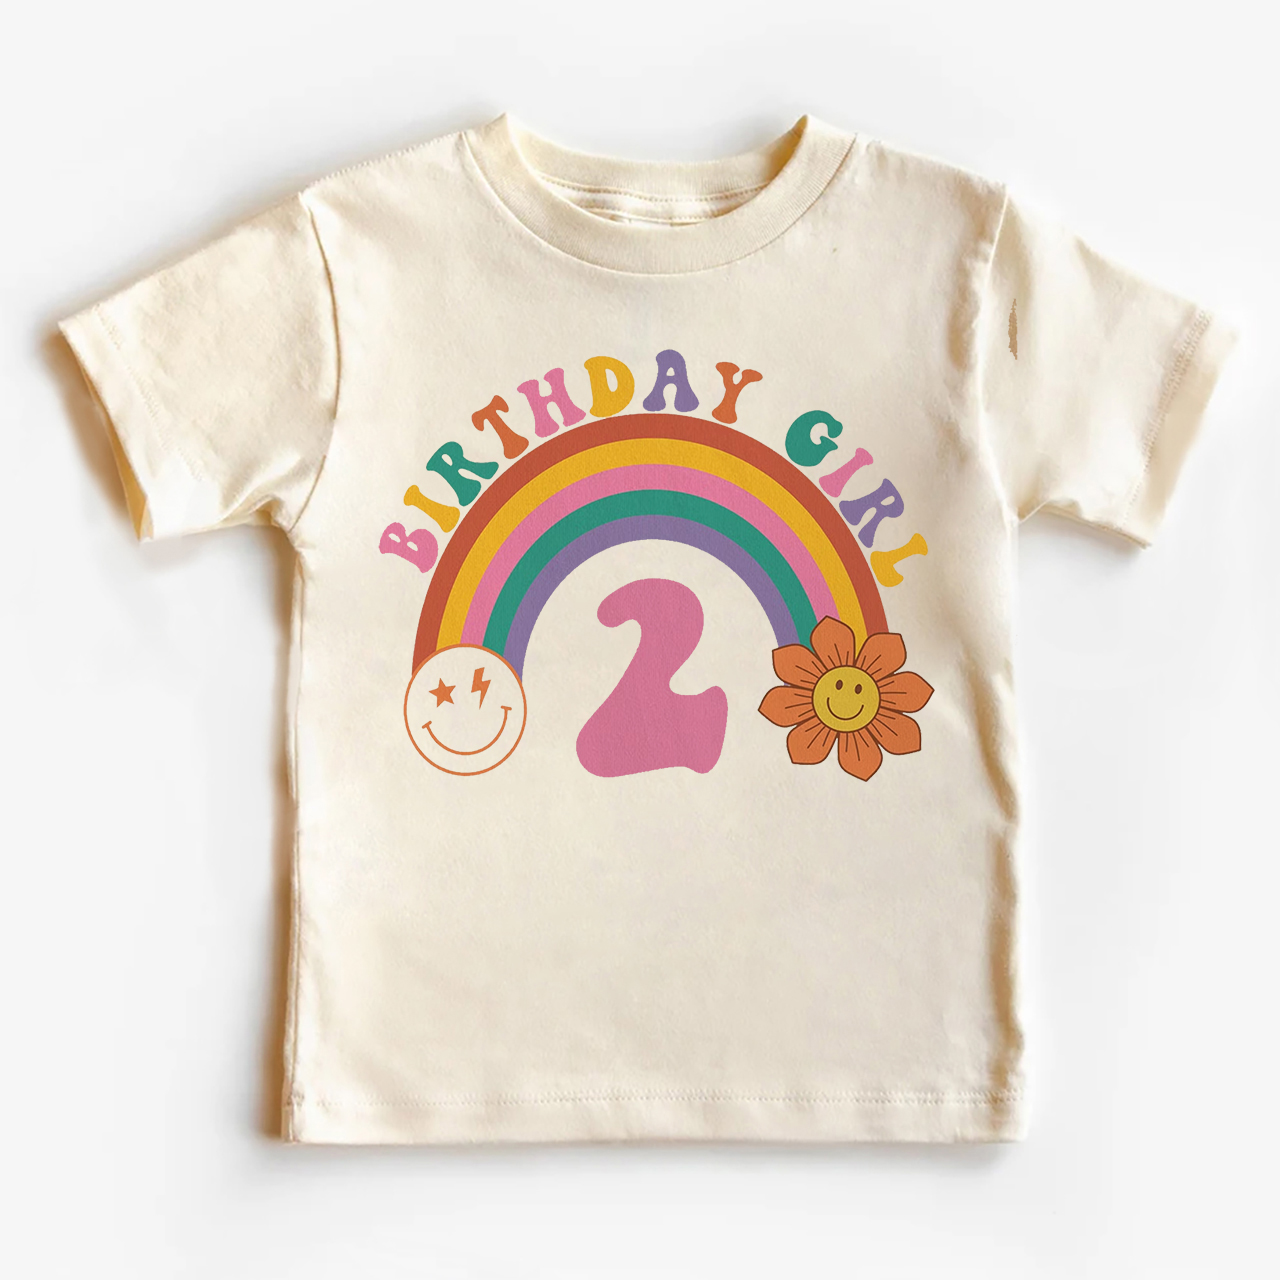 2nd Birthday Girl Rainbow Shirt For Kids